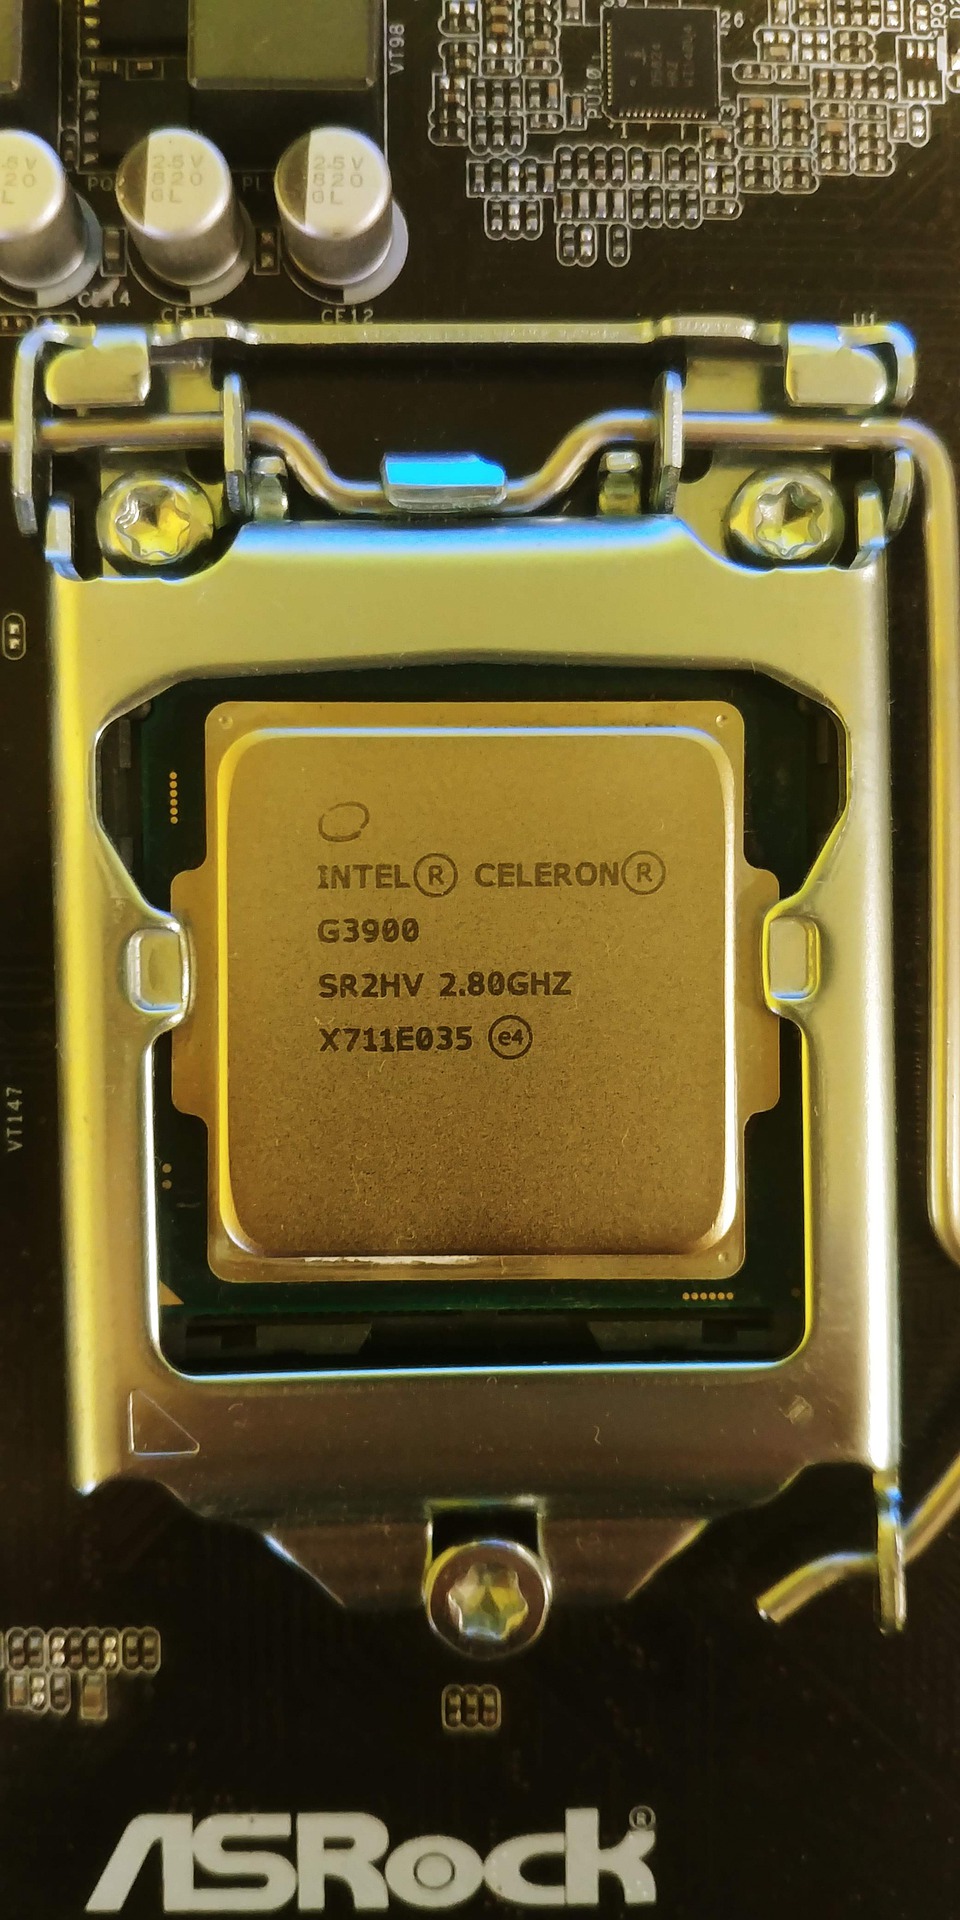 Les nouvelles puces économiques d’Intel à base de Celeron sont arrivées